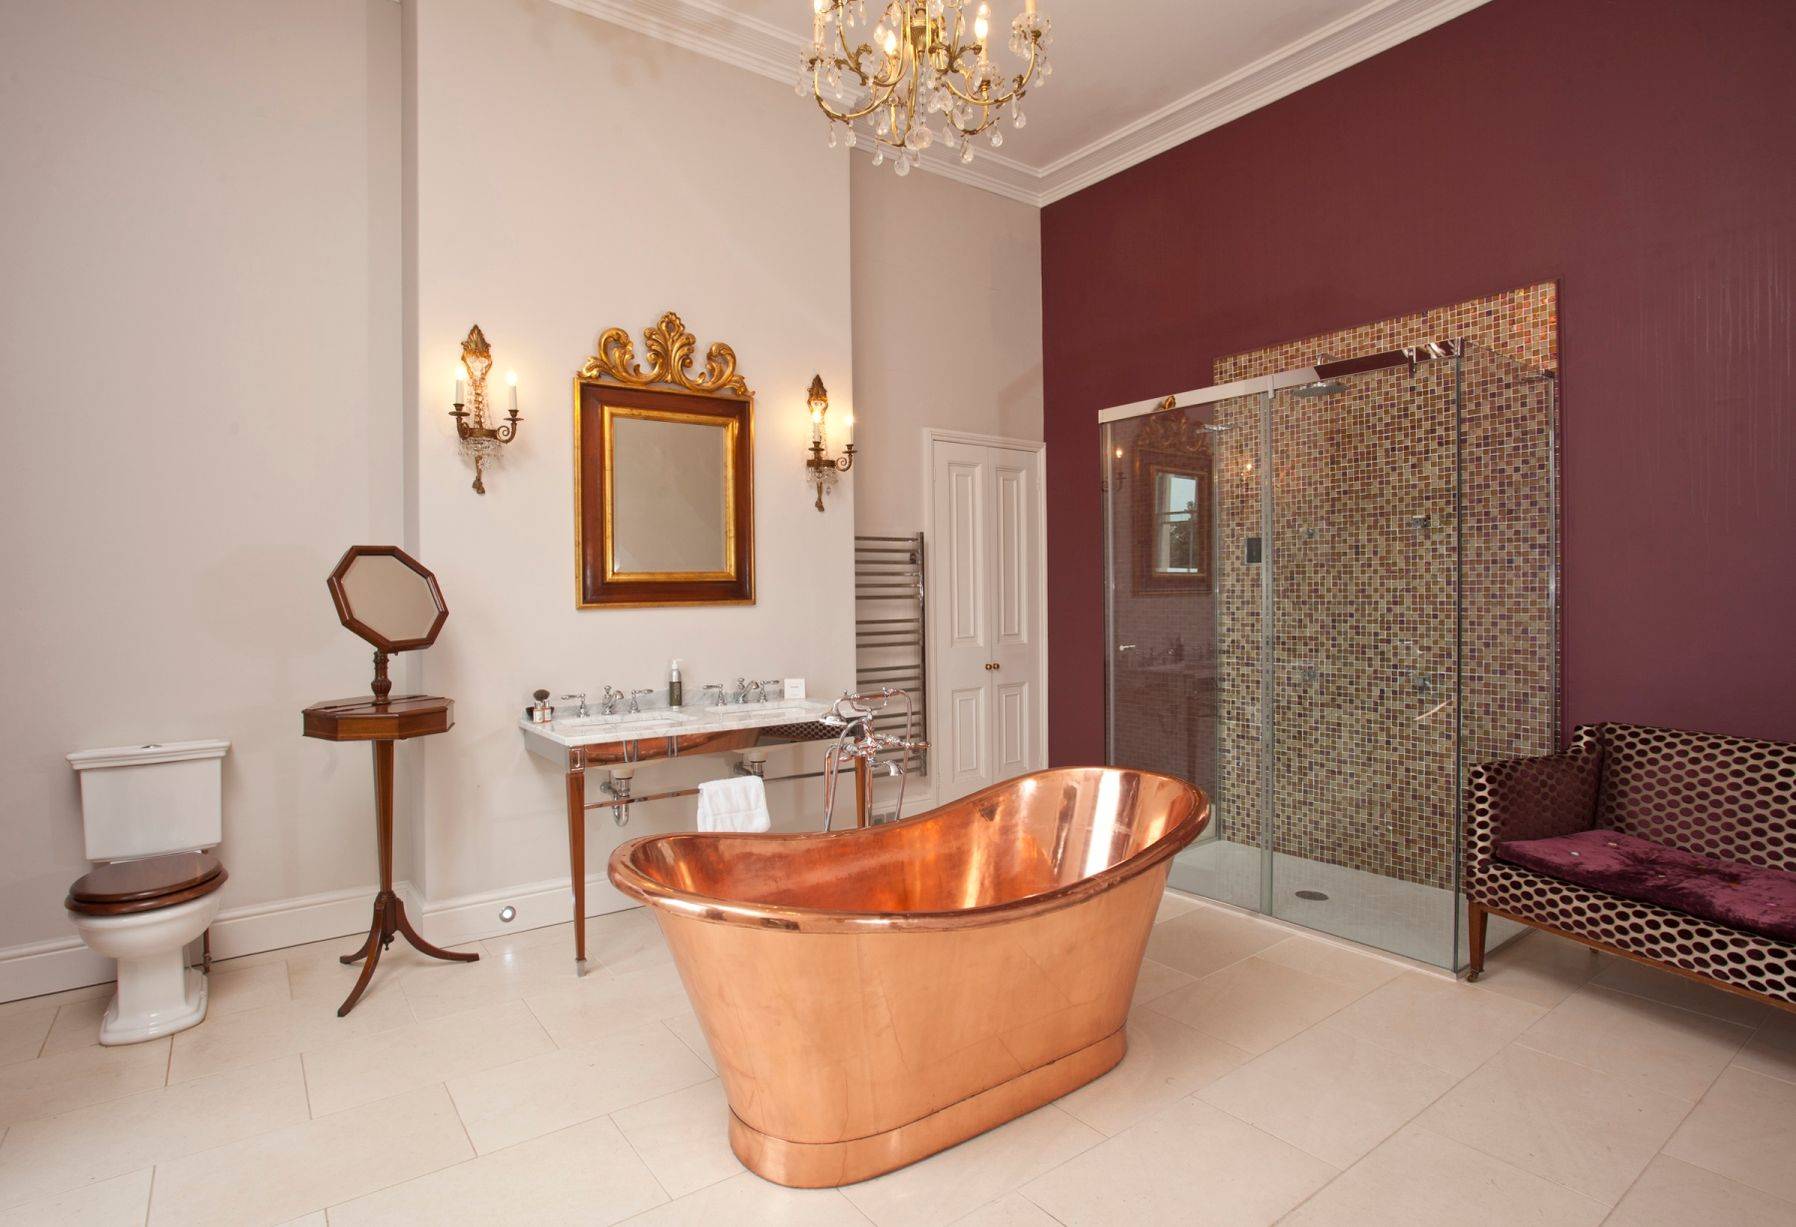 Baño de estilo clásico con bañera de cobre y lámpara de araña